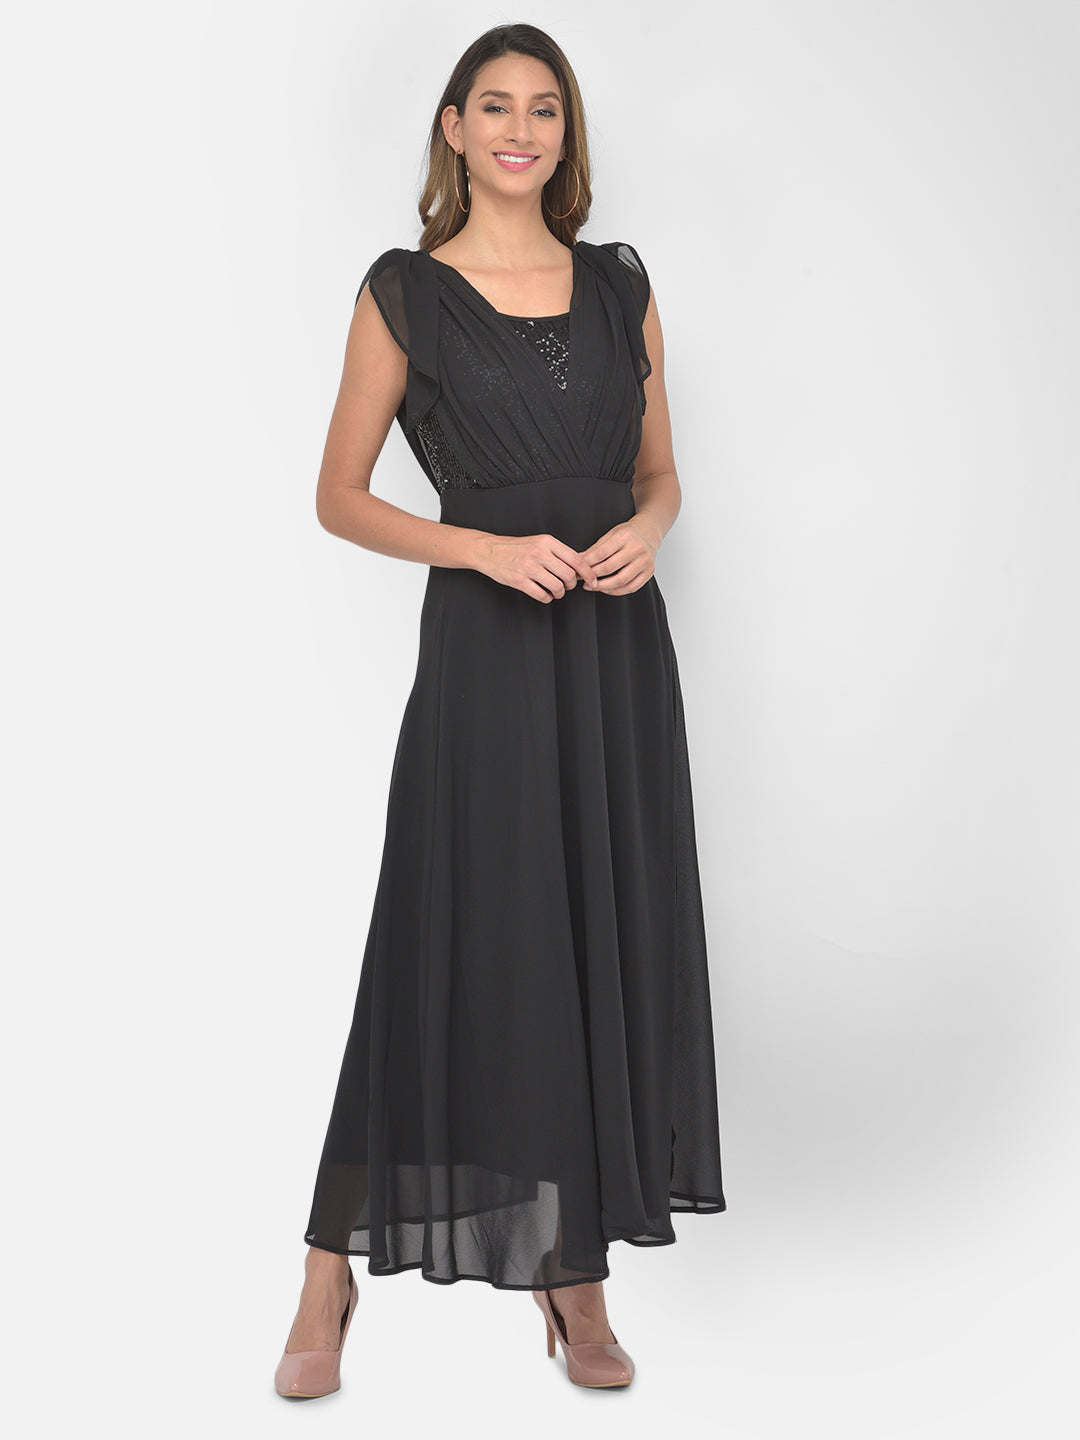 Black Cap Sleeve Maxi 2 Fir 1 Dress